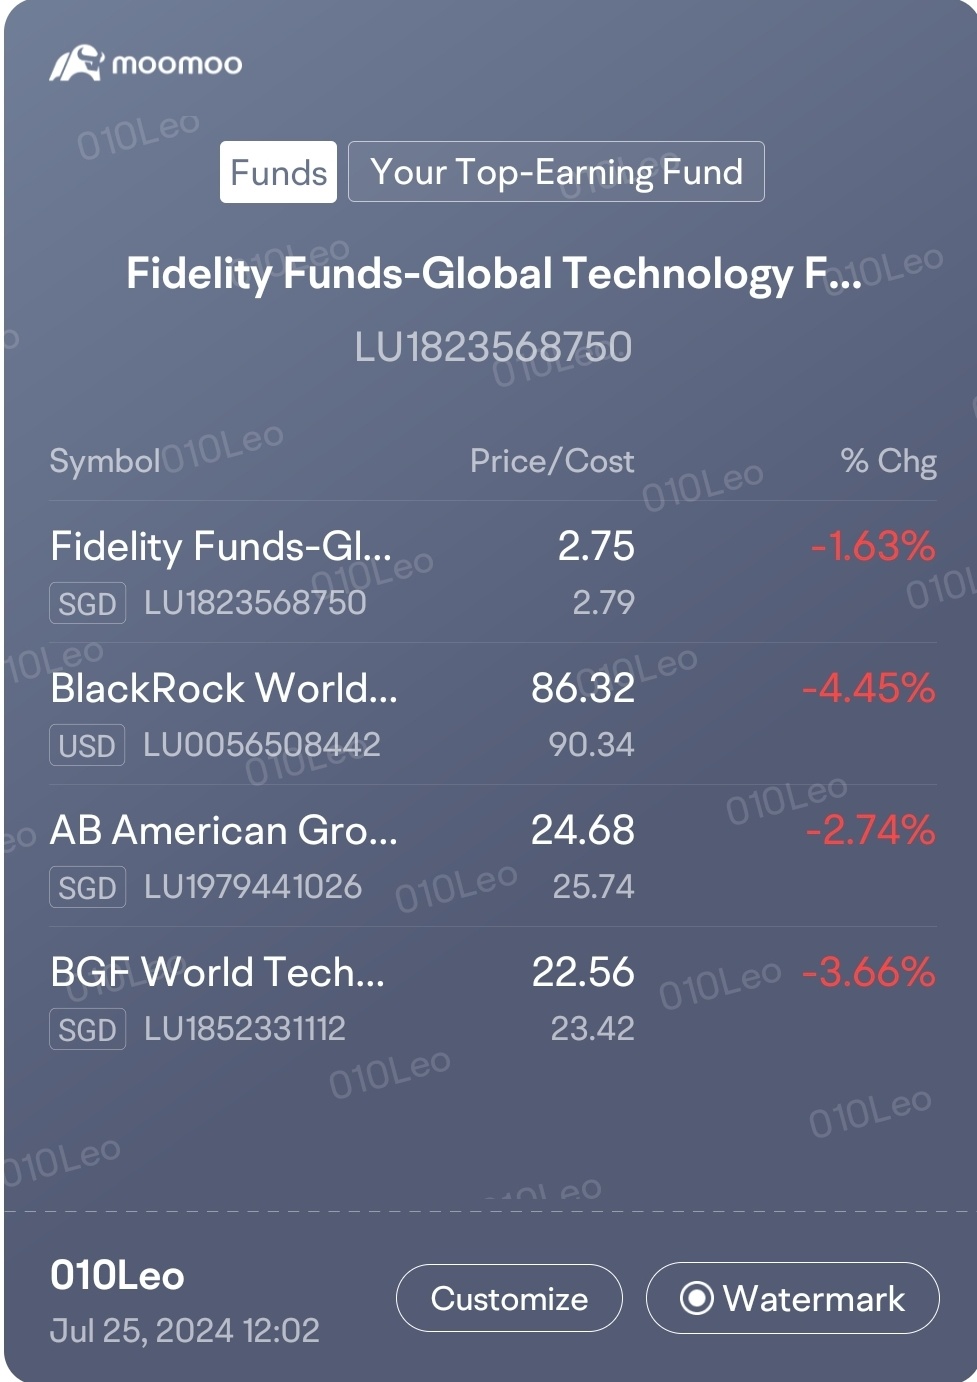 流血... 由於近期幾個科技的崩潰，資金下跌了... 昨天似乎整個美國市場下跌... sgx 現在也下跌... 也許慢慢 dca